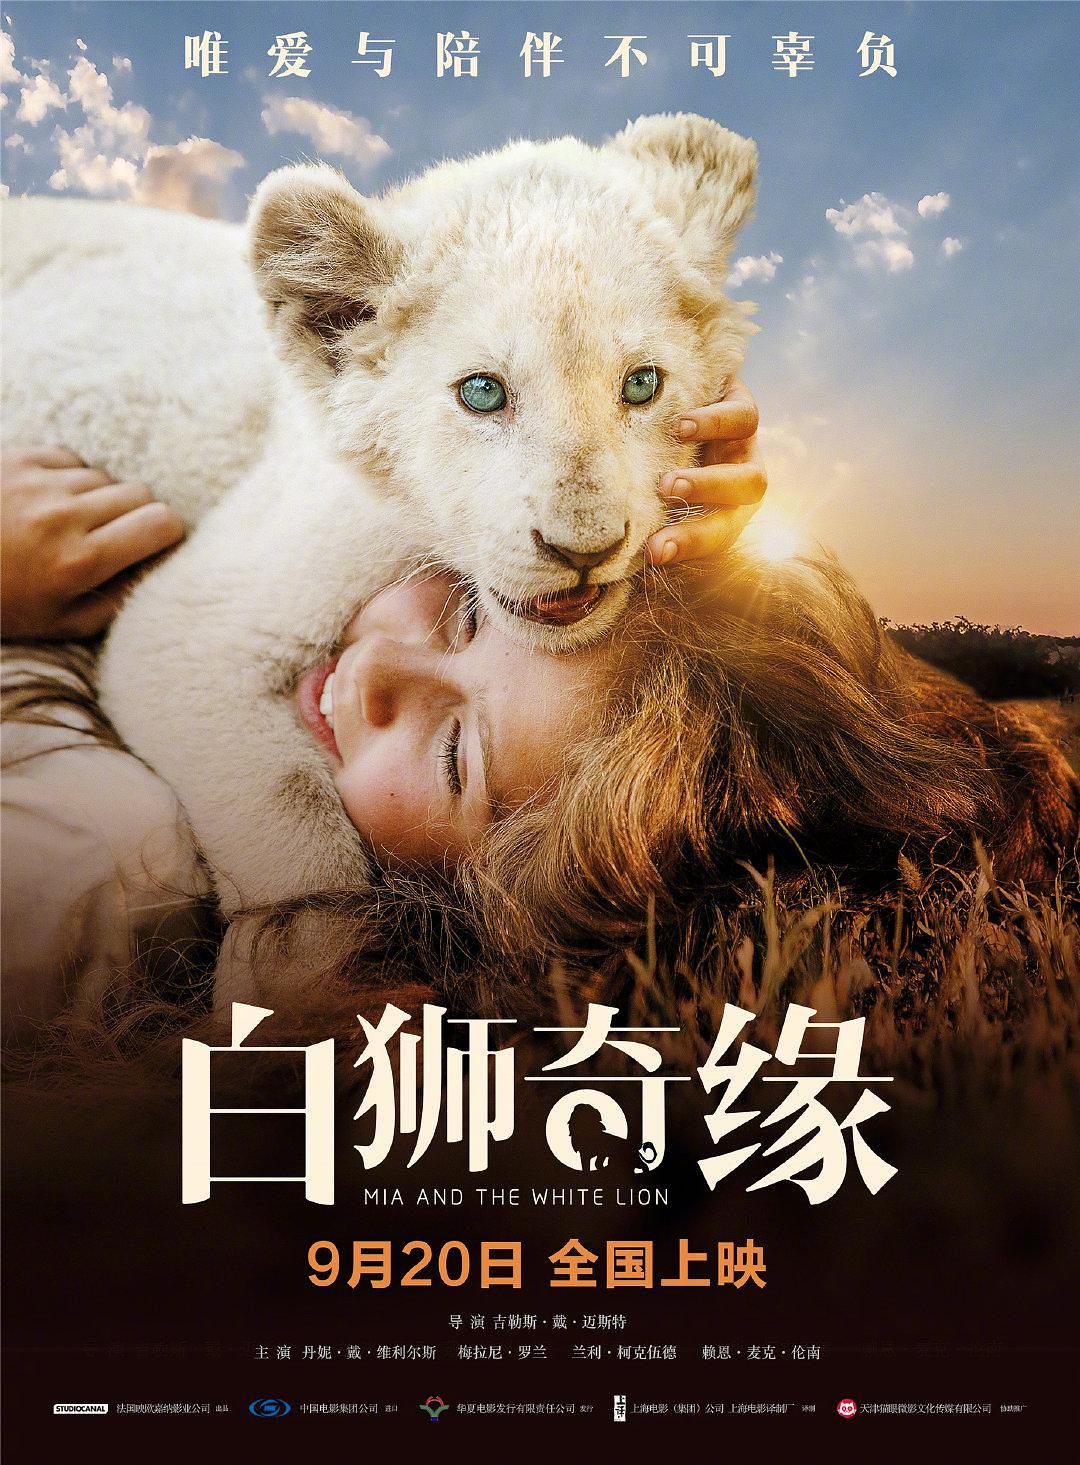 白狮奇缘 Mia.and.the.White.Lion.2018.DUBBED.720p.BluRay.x264-PussyFoot 4.37GB-1.png